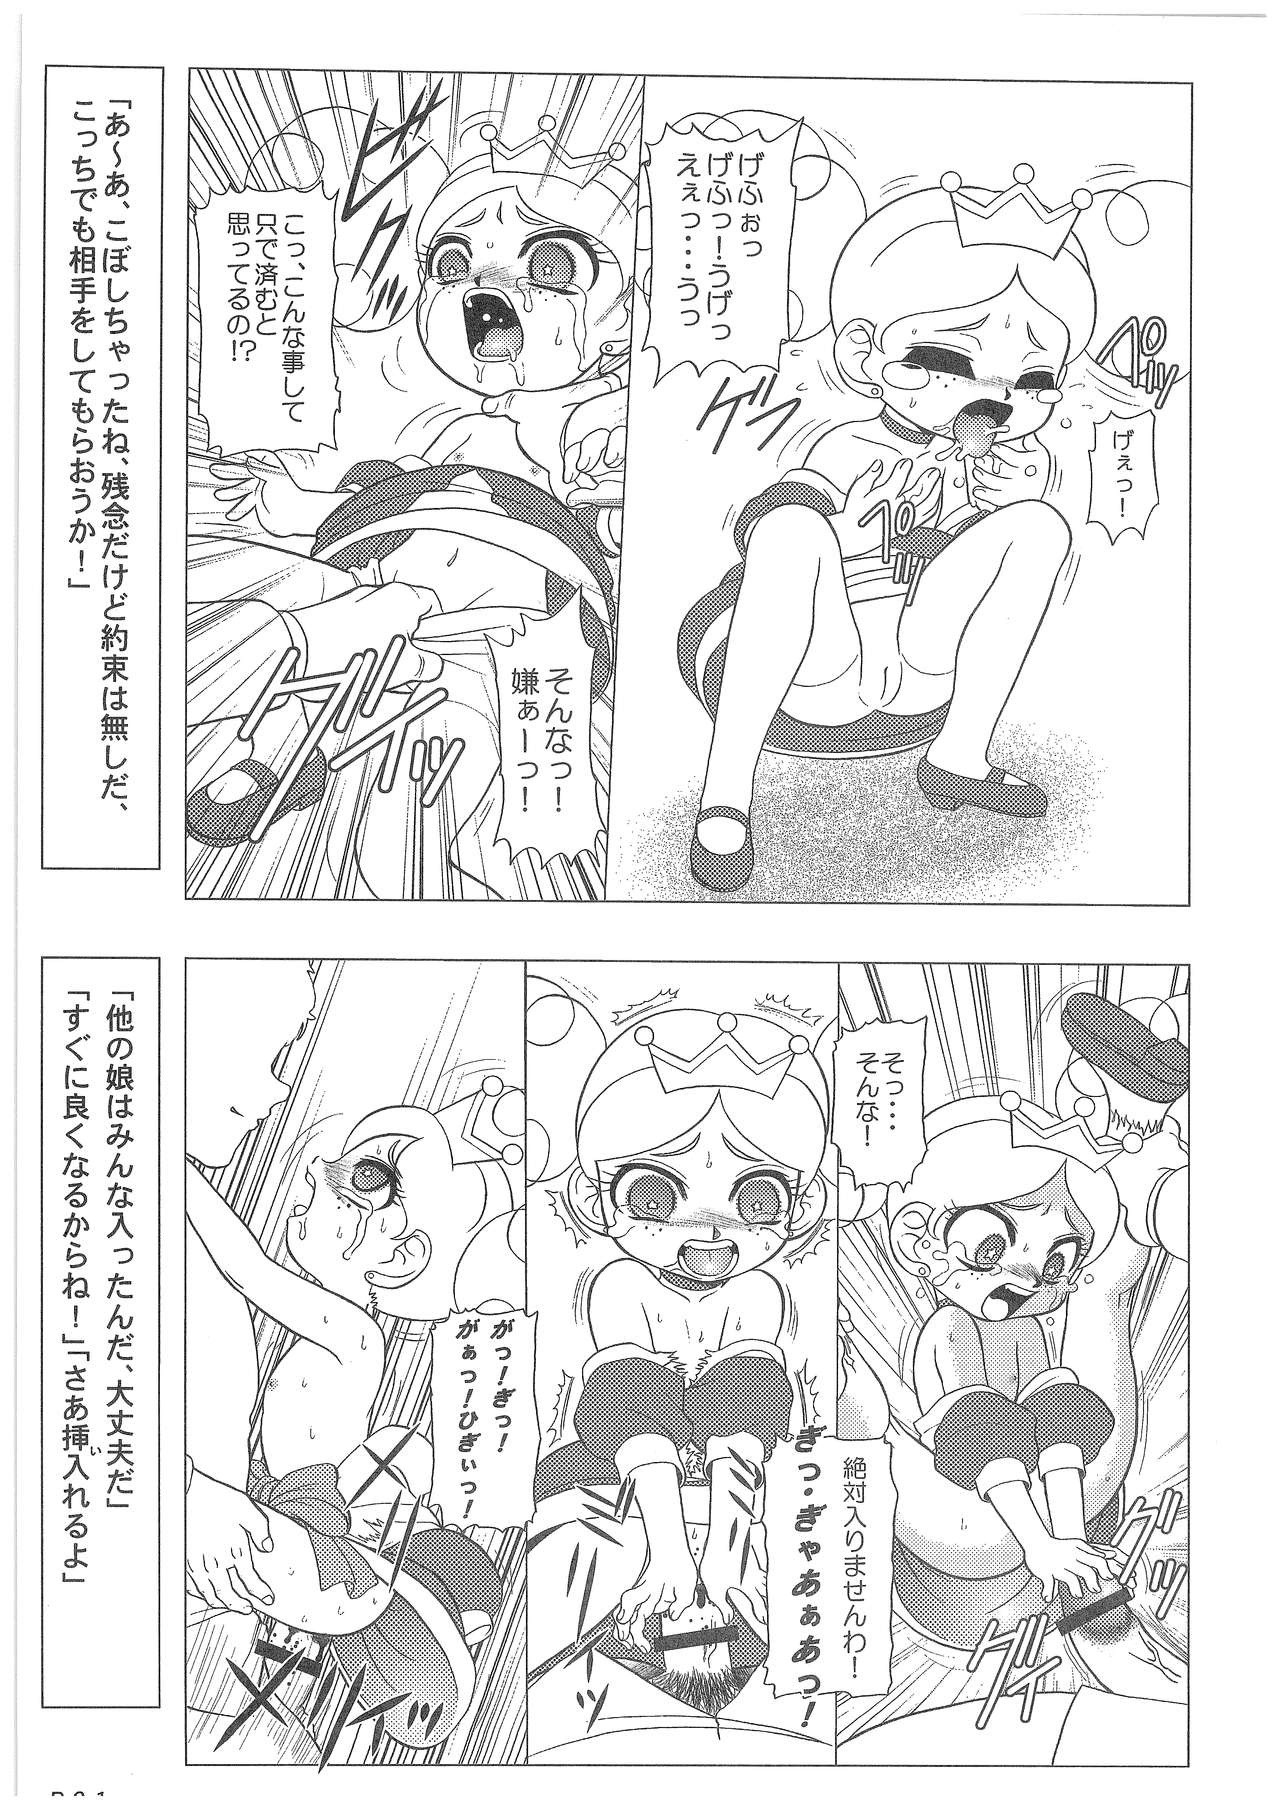 Power Puff Girls Z 001 hentai manga picture 19